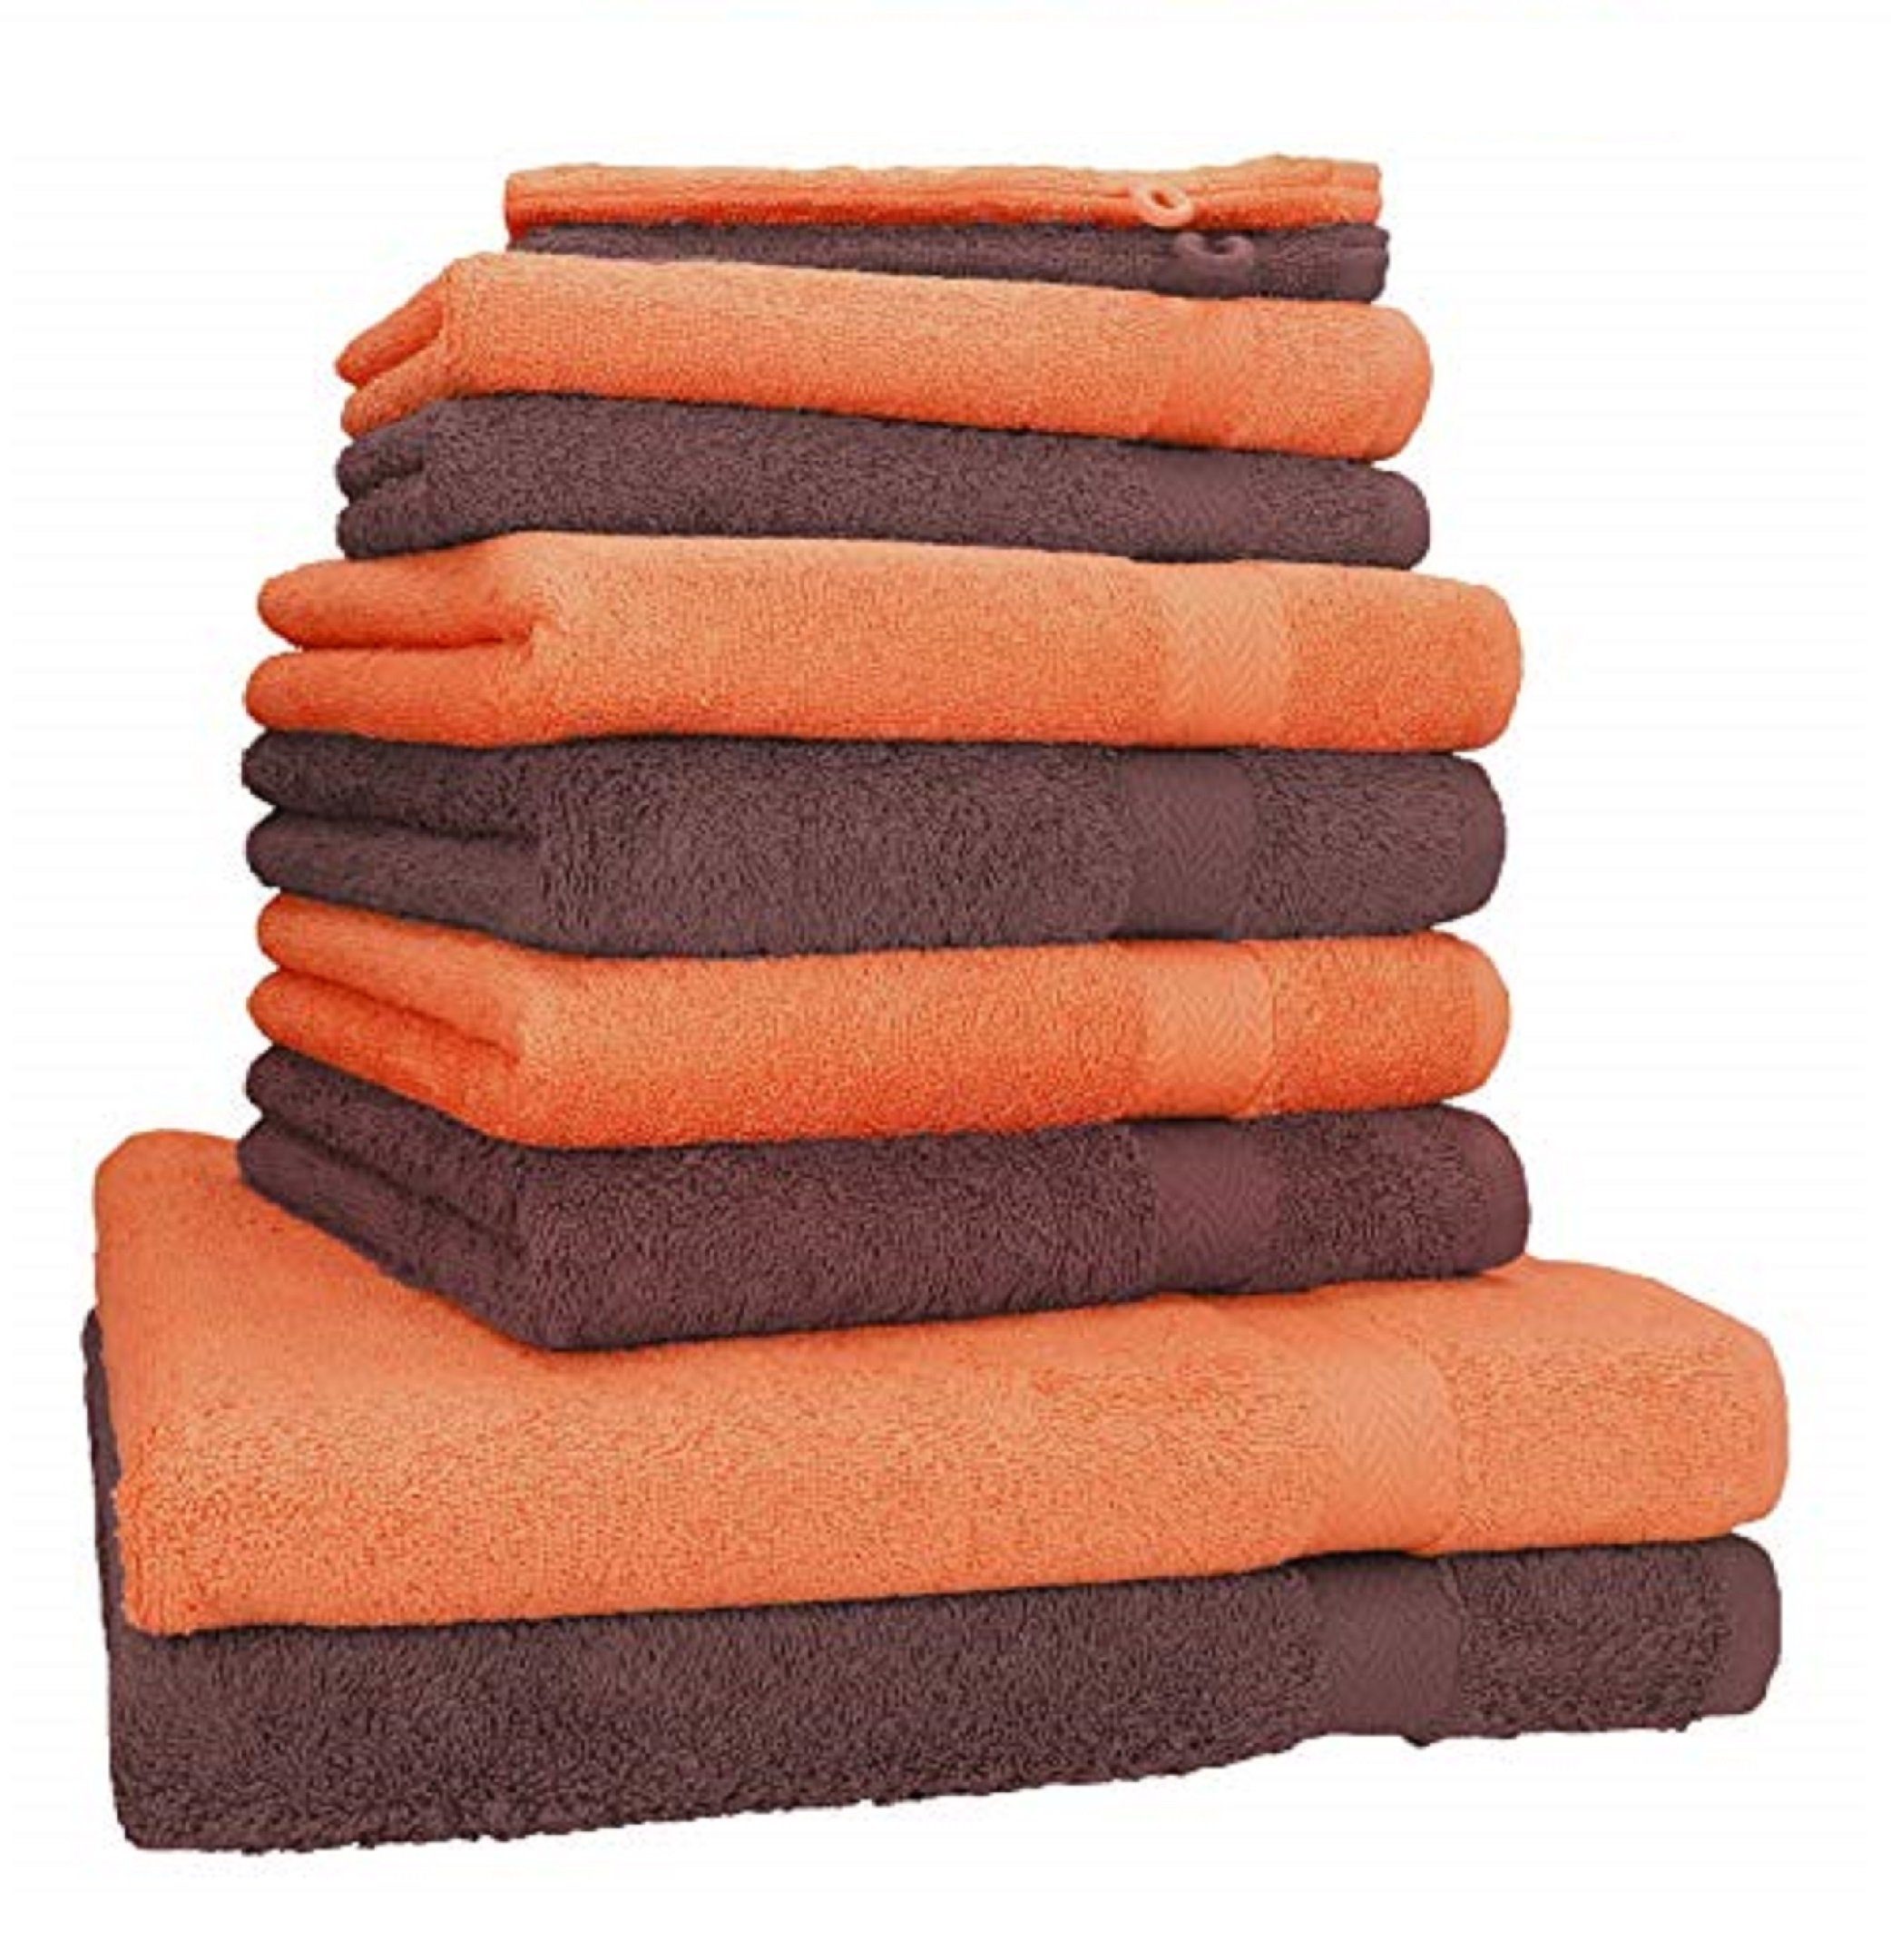 Betz Handtuch Set 10-TLG. Handtuch-Set Premium Farbe Orange & Nussbraun, 100% Baumwolle, (10-tlg)